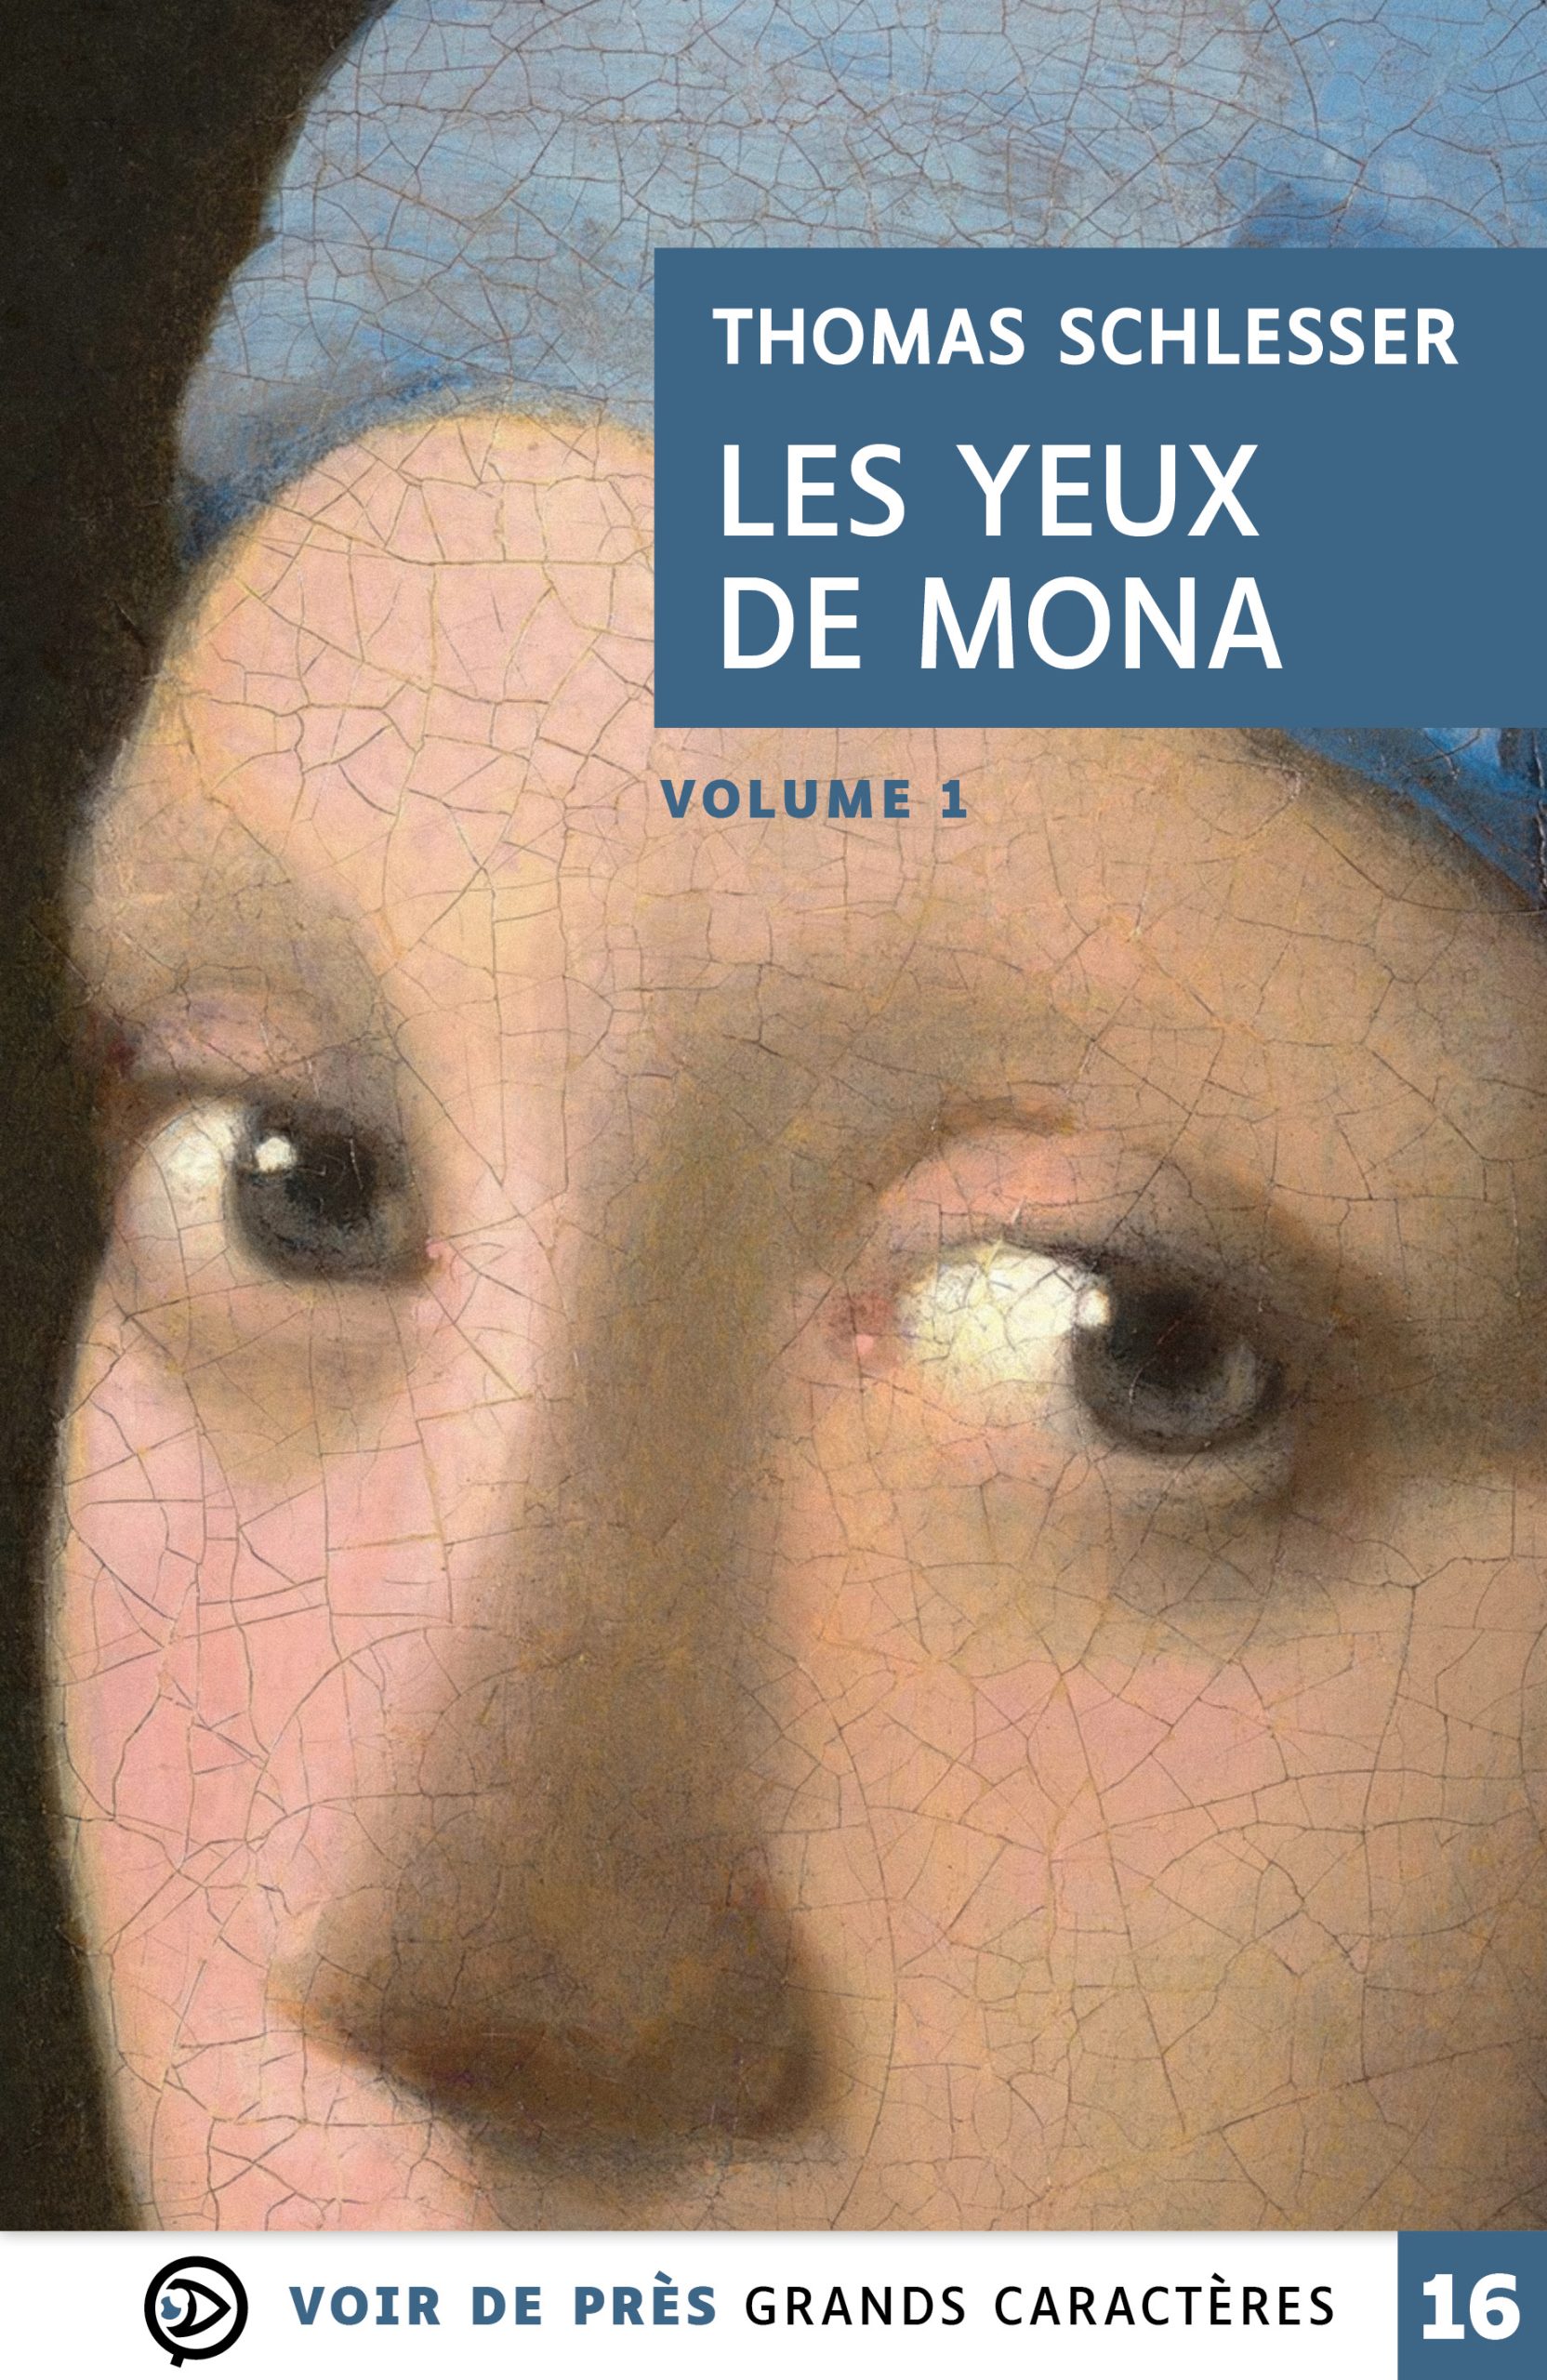 Couverture du livre en grands caractères - gros caractères - Les Yeux de Mona de Thomas Schlesser